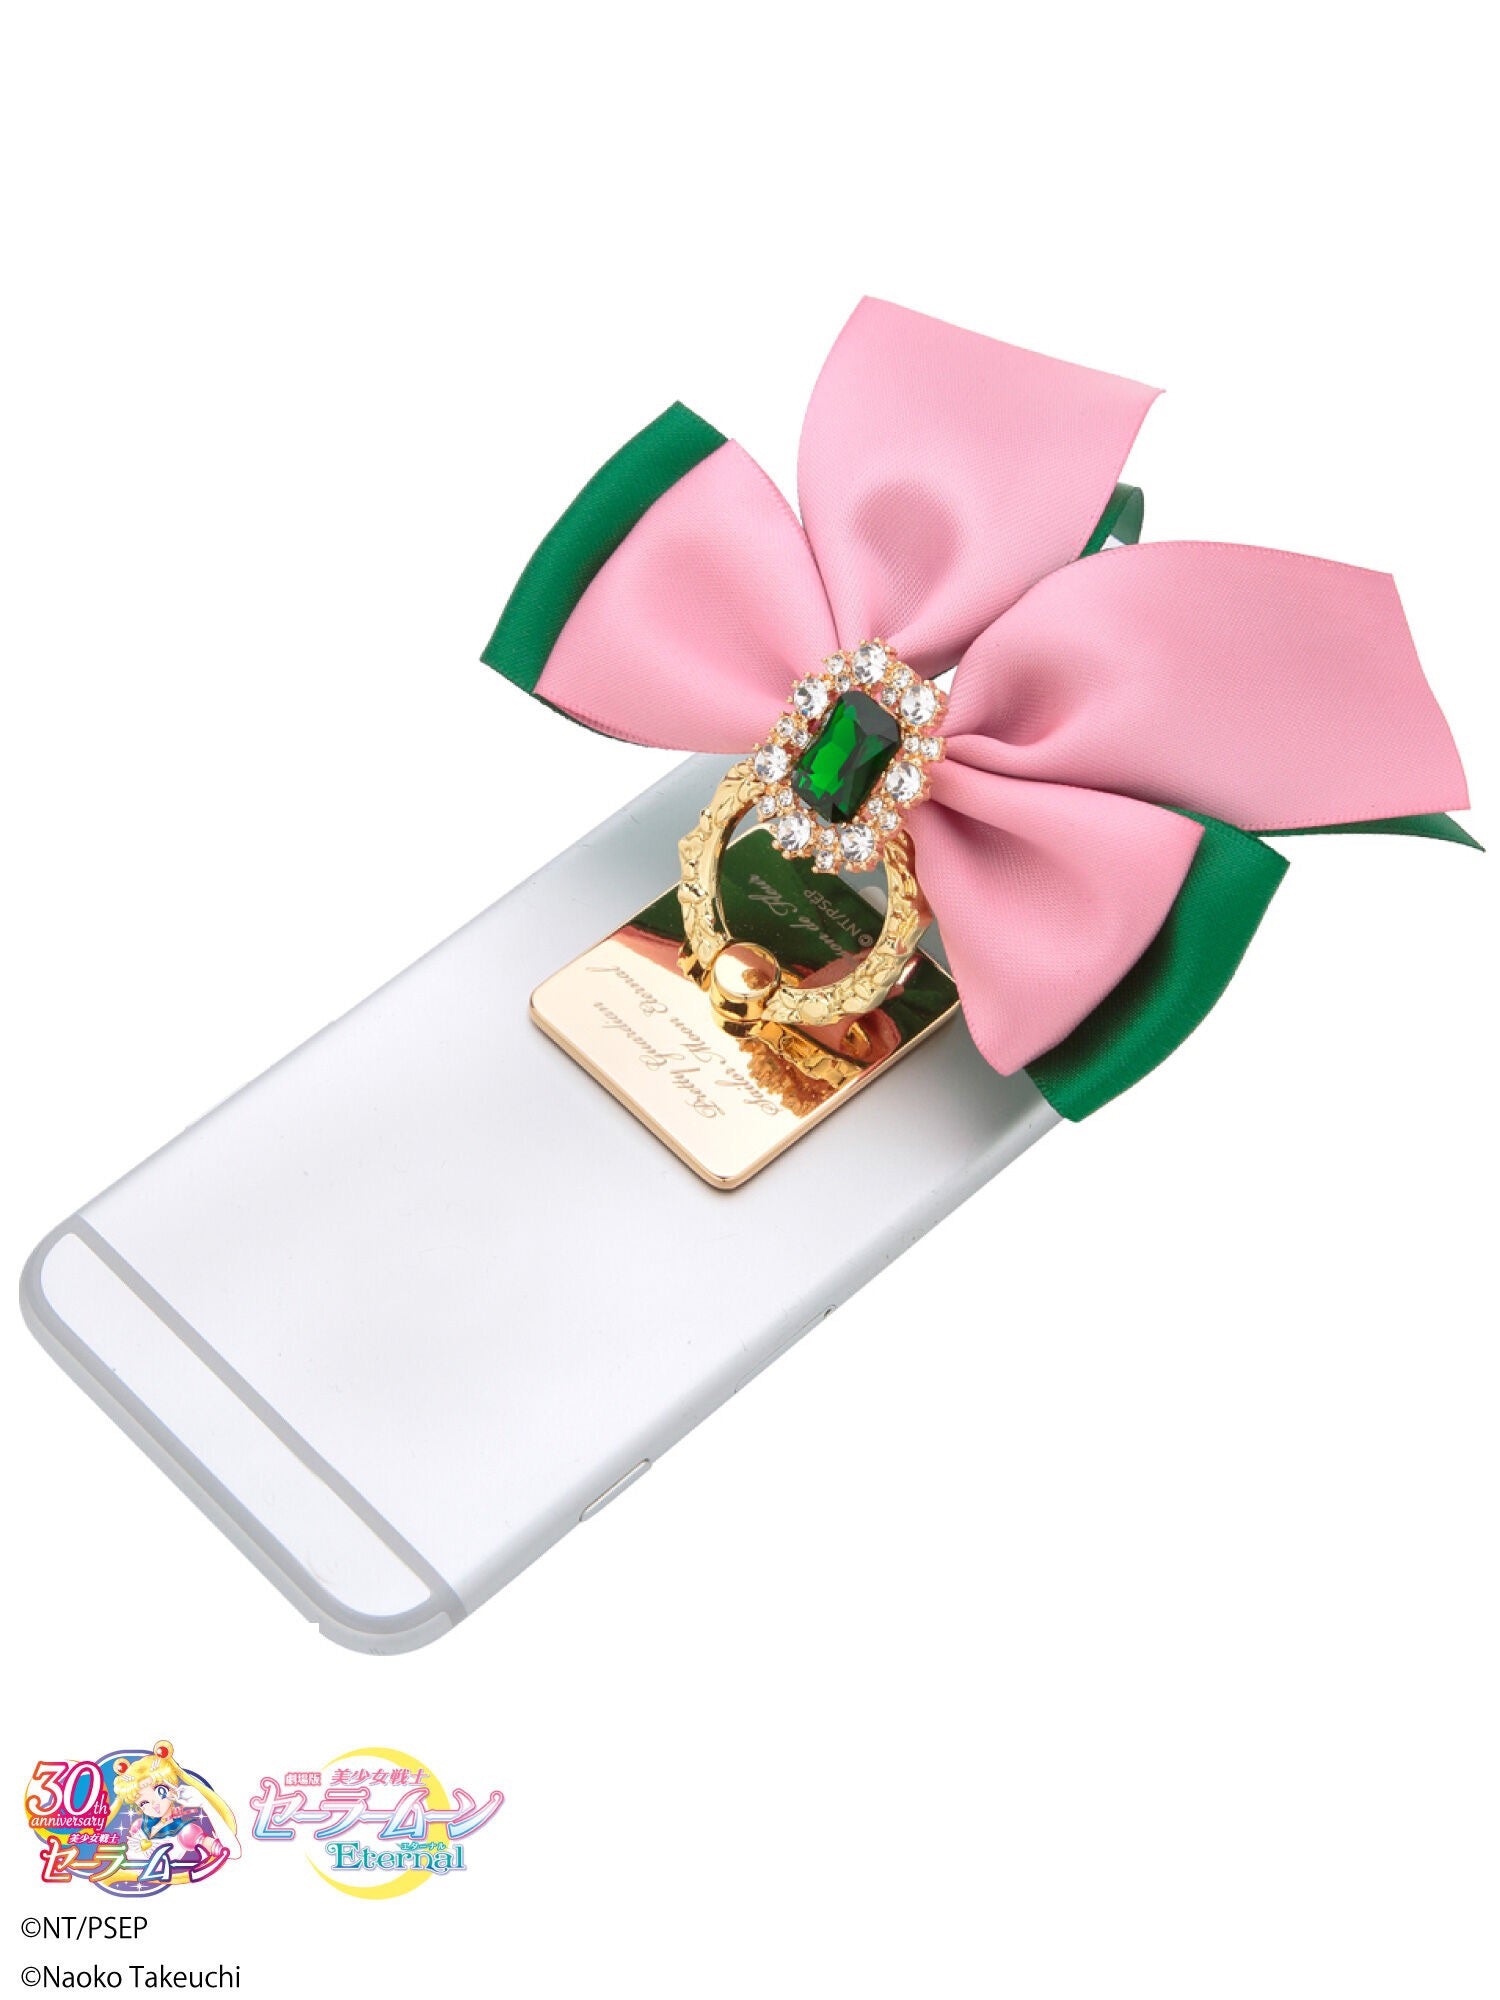 Maison De Fleur x Sailor Moon Ribbon Phone Accessory (1st Season Sailors)